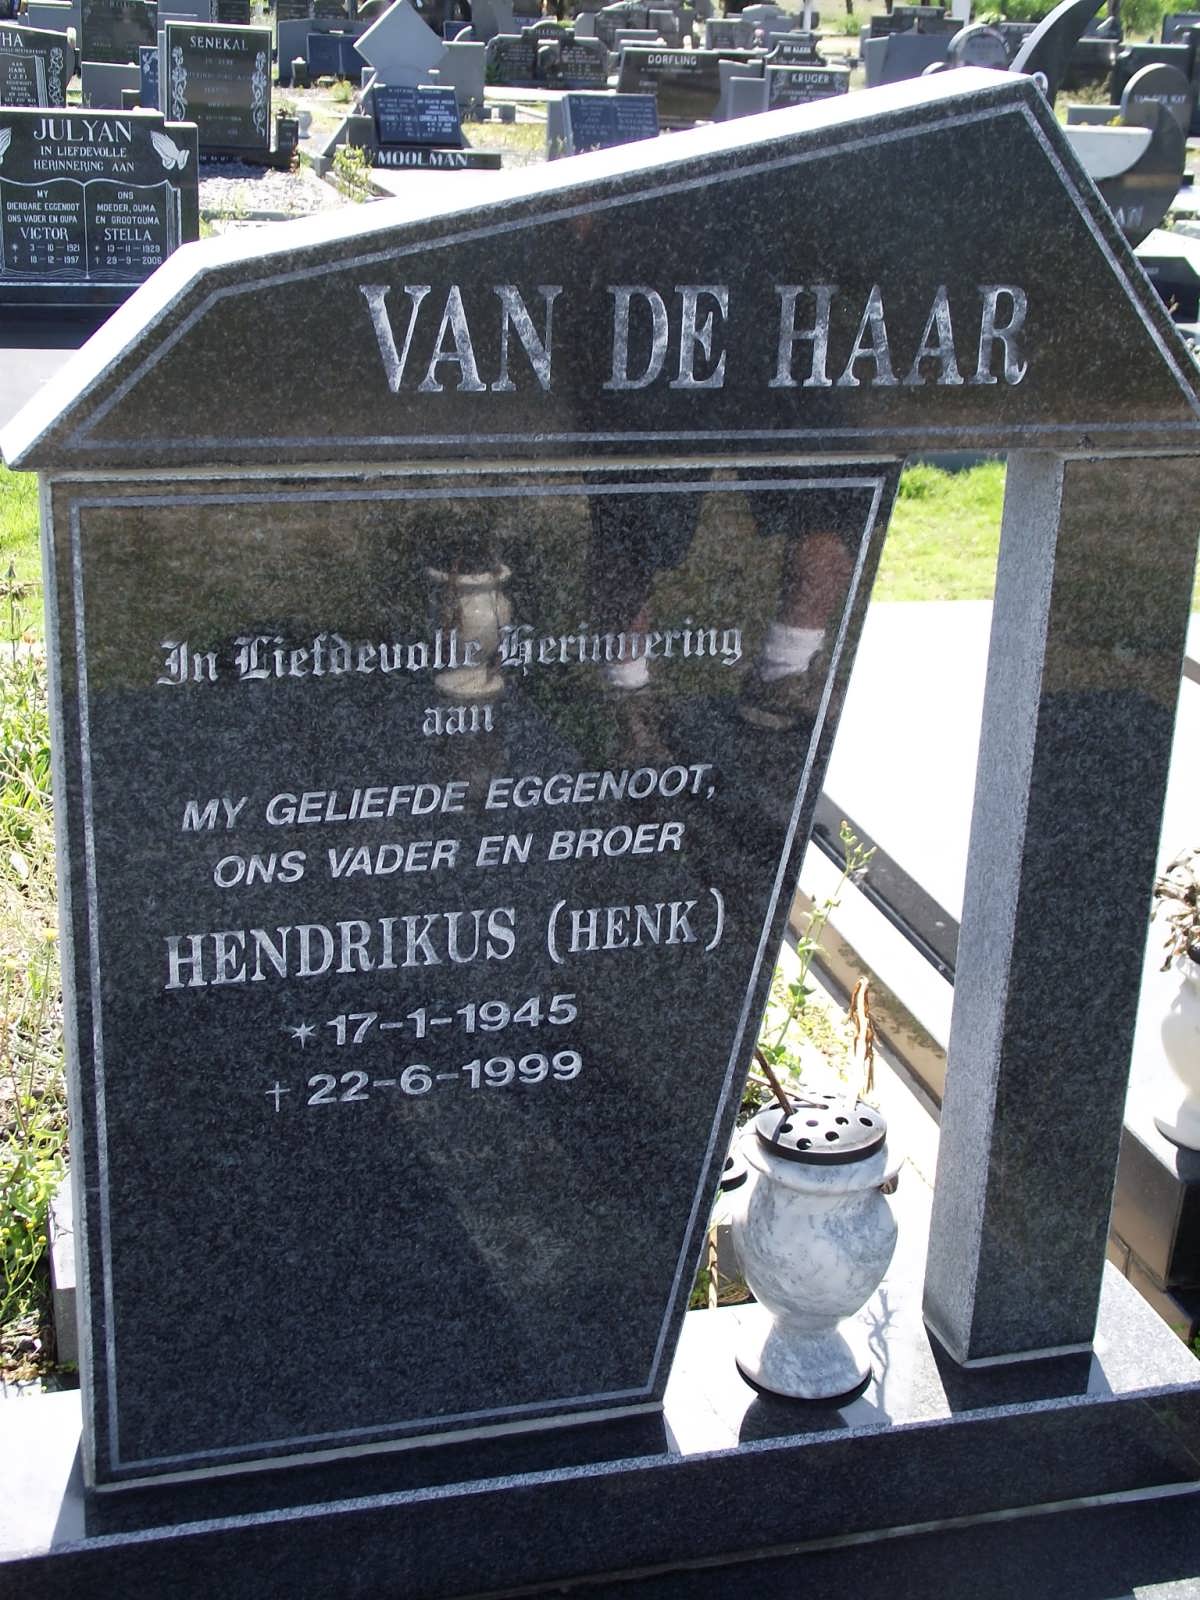 HAAR Hendrikus, van de 1945-1999 :: HAAR Gerard Jan, van de 1974-2005